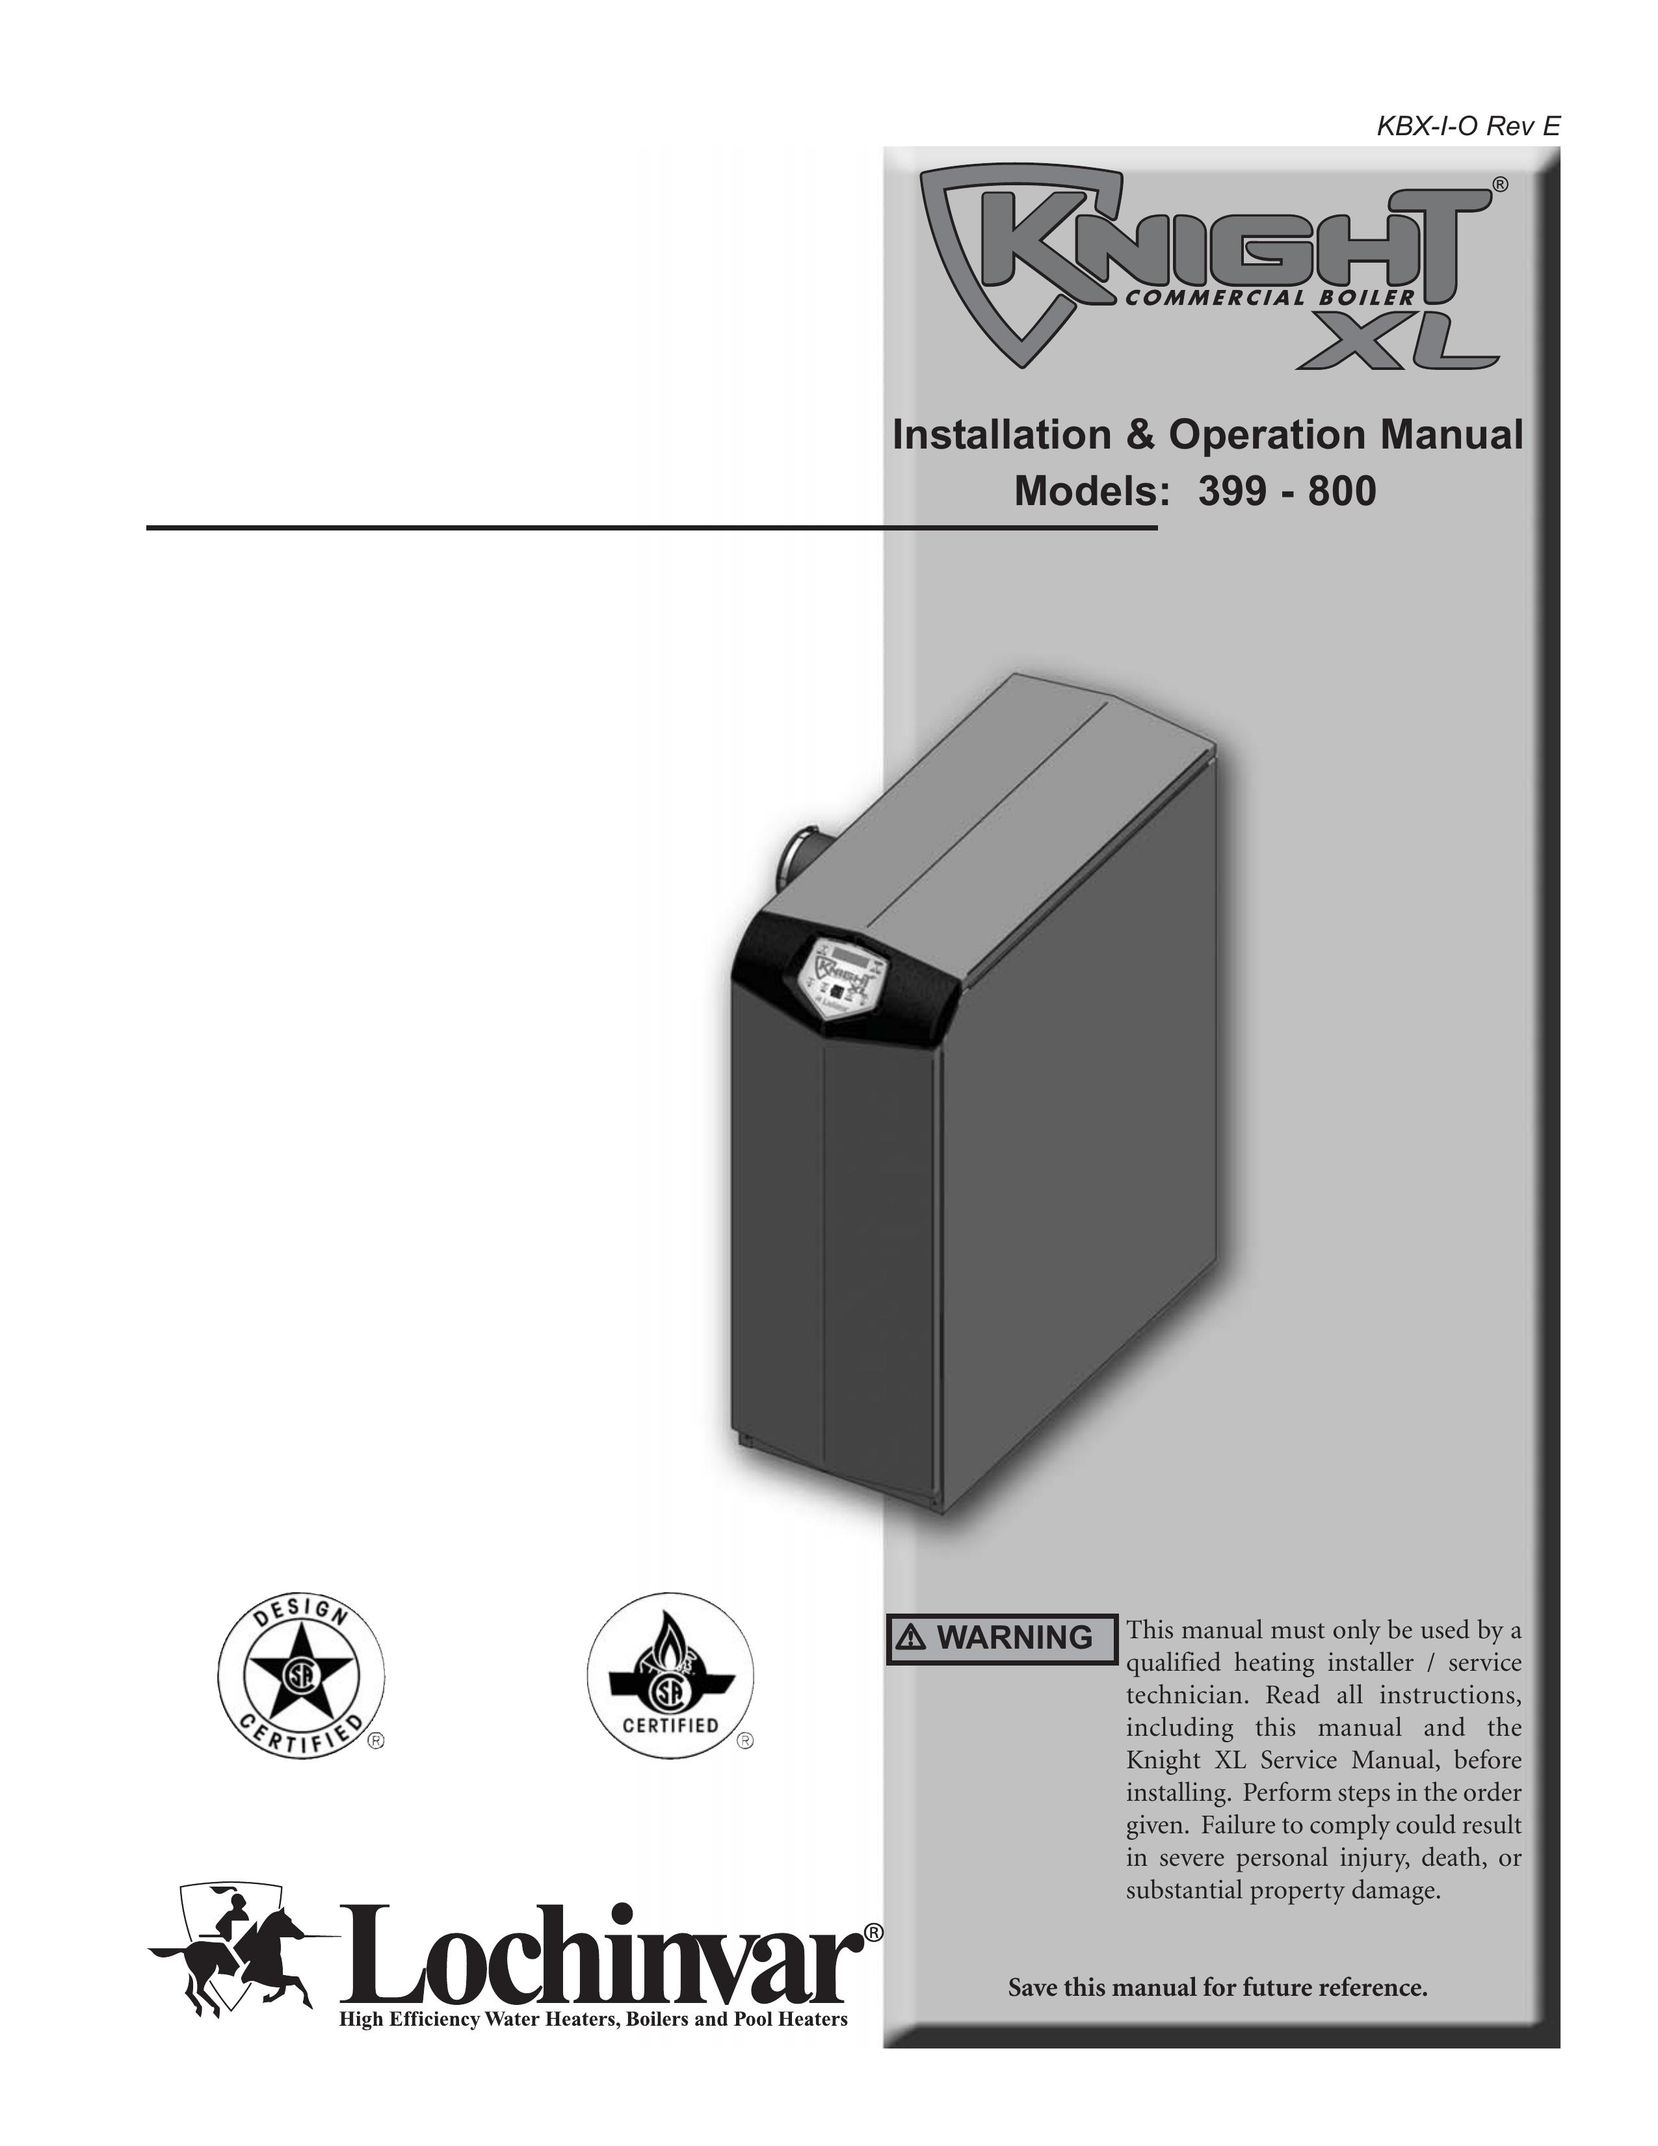 Lochinvar 399 - 800 Boiler User Manual